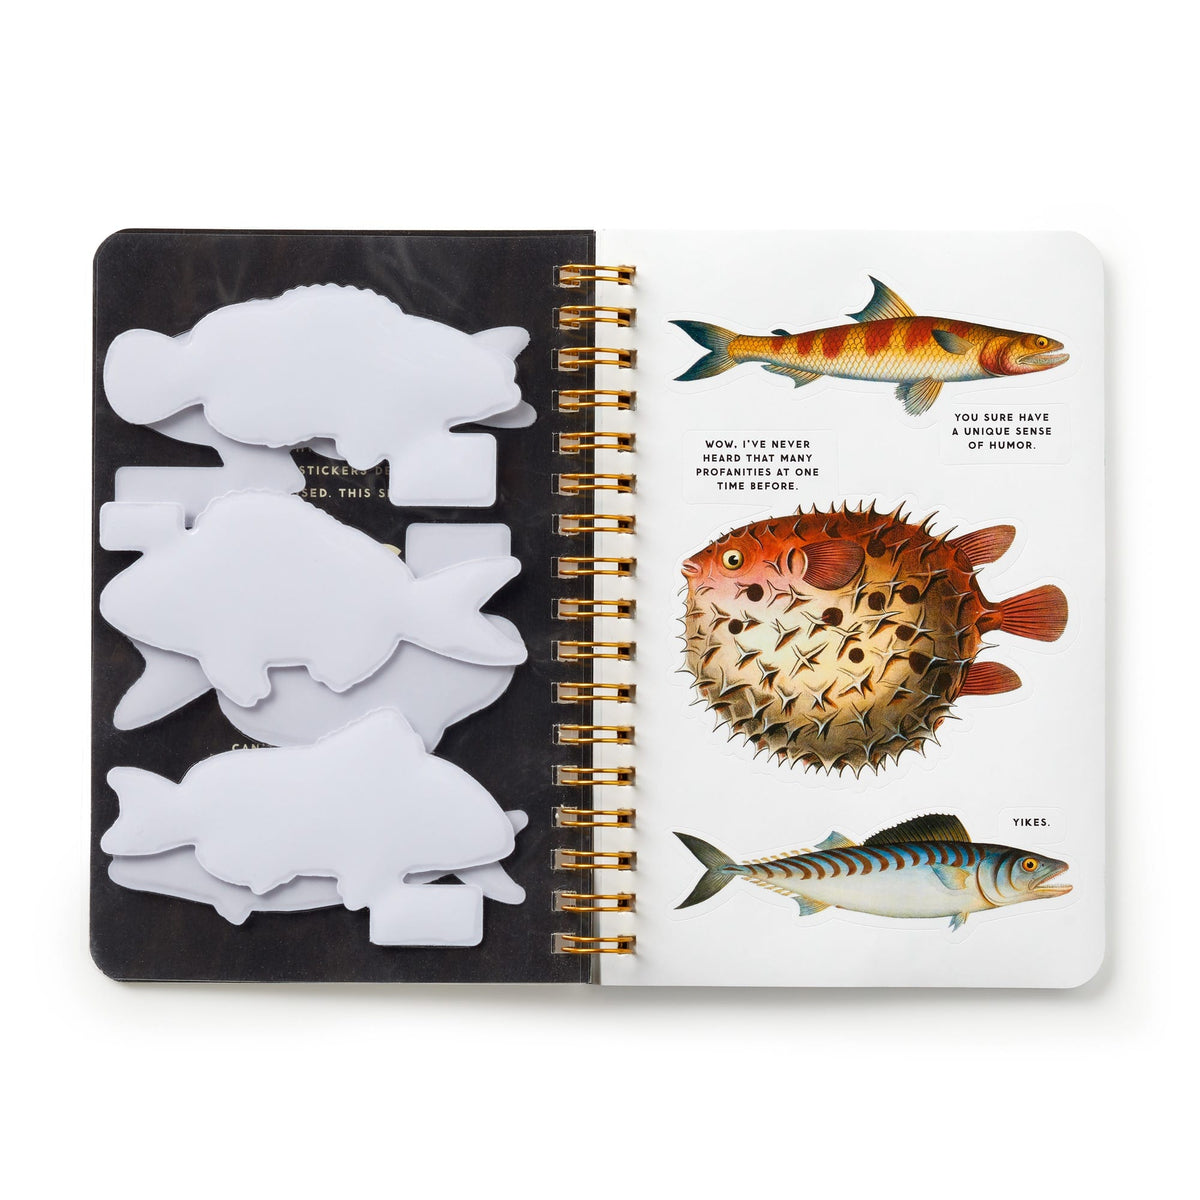 Judgy Fish Sticker Book - Brass Monkey - 9780735379398